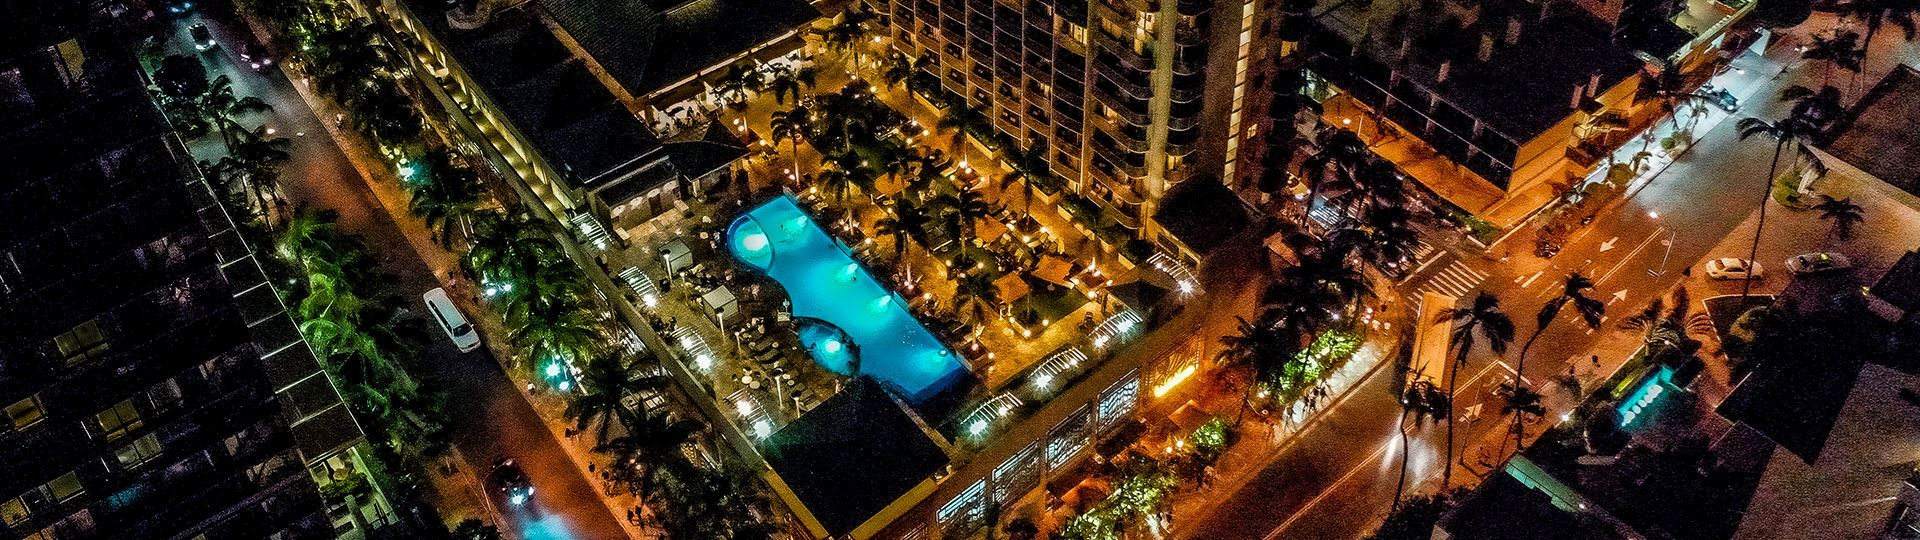 Hotel Special Offers in Honolulu, Hawaii